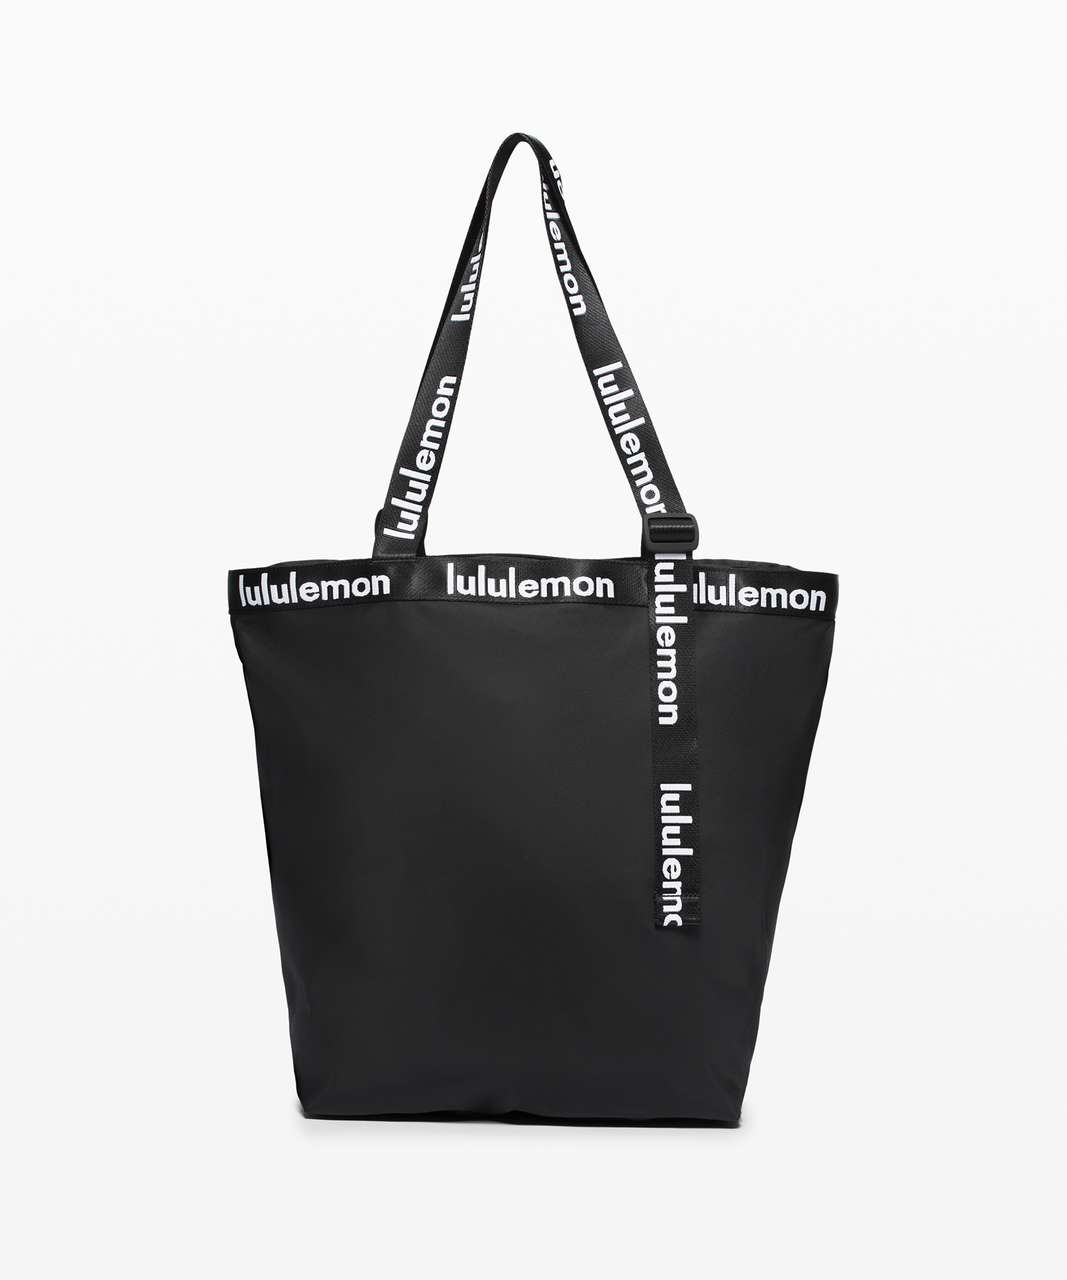 Lululemon The Rest is Written Tote Bag Black White - Depop